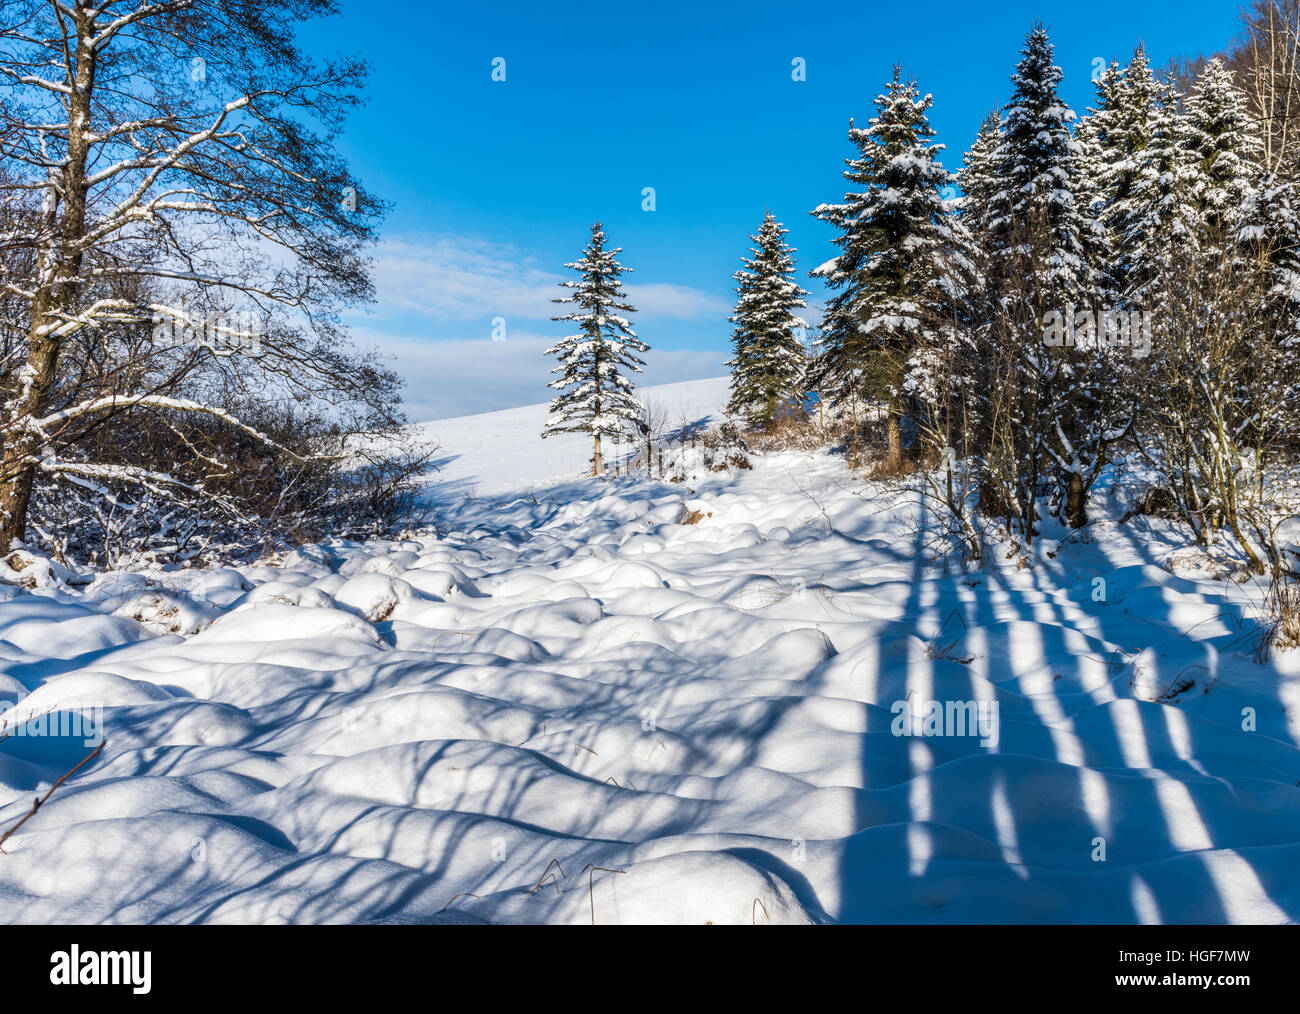 Bayerischer Wald, Landschaft, Blaibacher See, Schnee, weiß, Sonne, Wiesen Hügel Bäume reinigen. Atmen. Frische Luft, Urlaub, regi Stockfoto